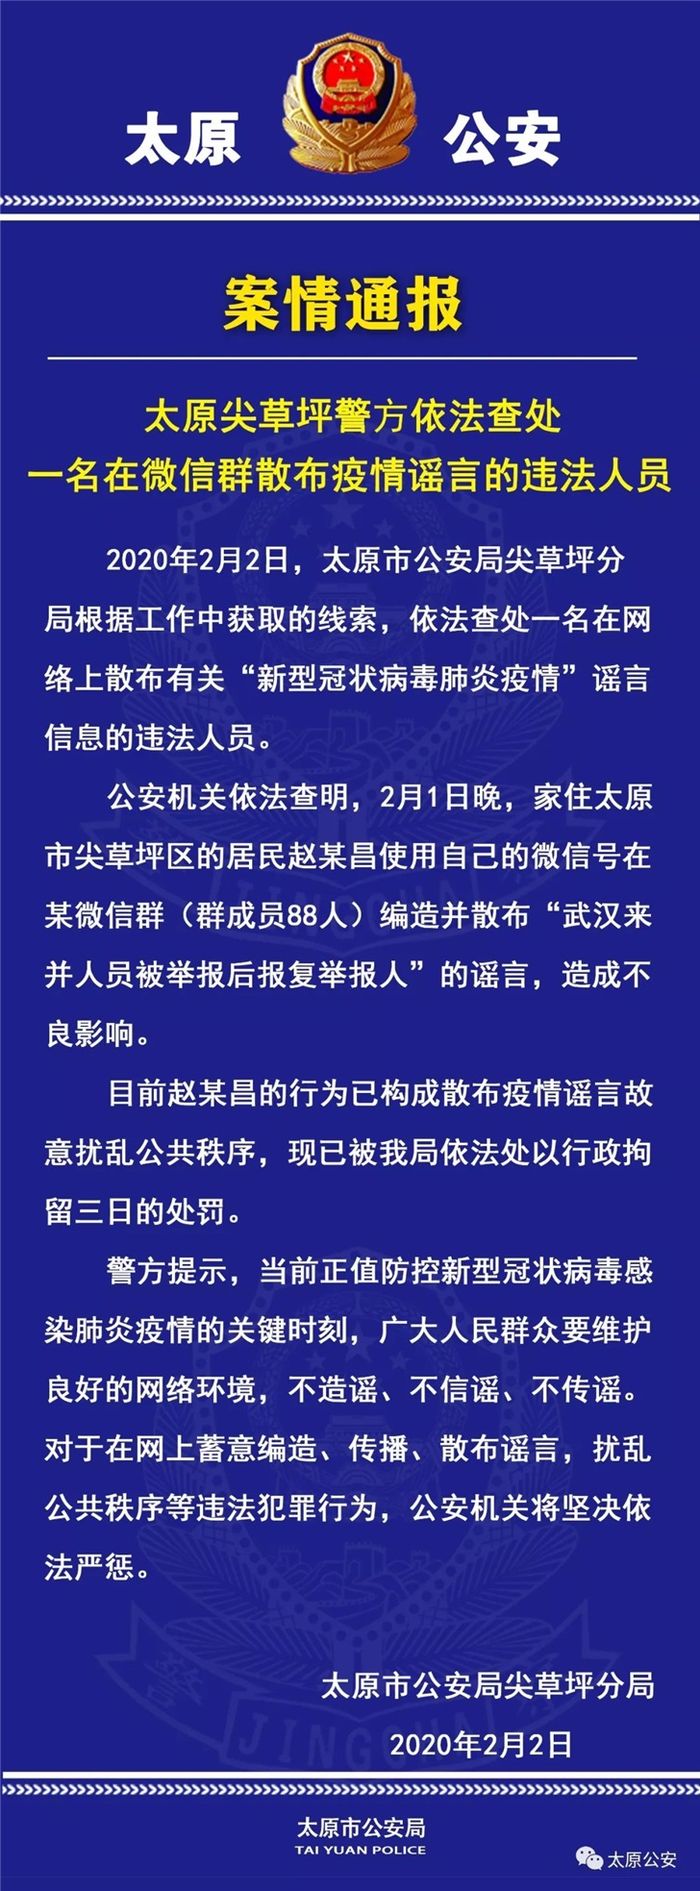 微信群散布武汉来并人员被举报后报复举报人 违法者被行拘